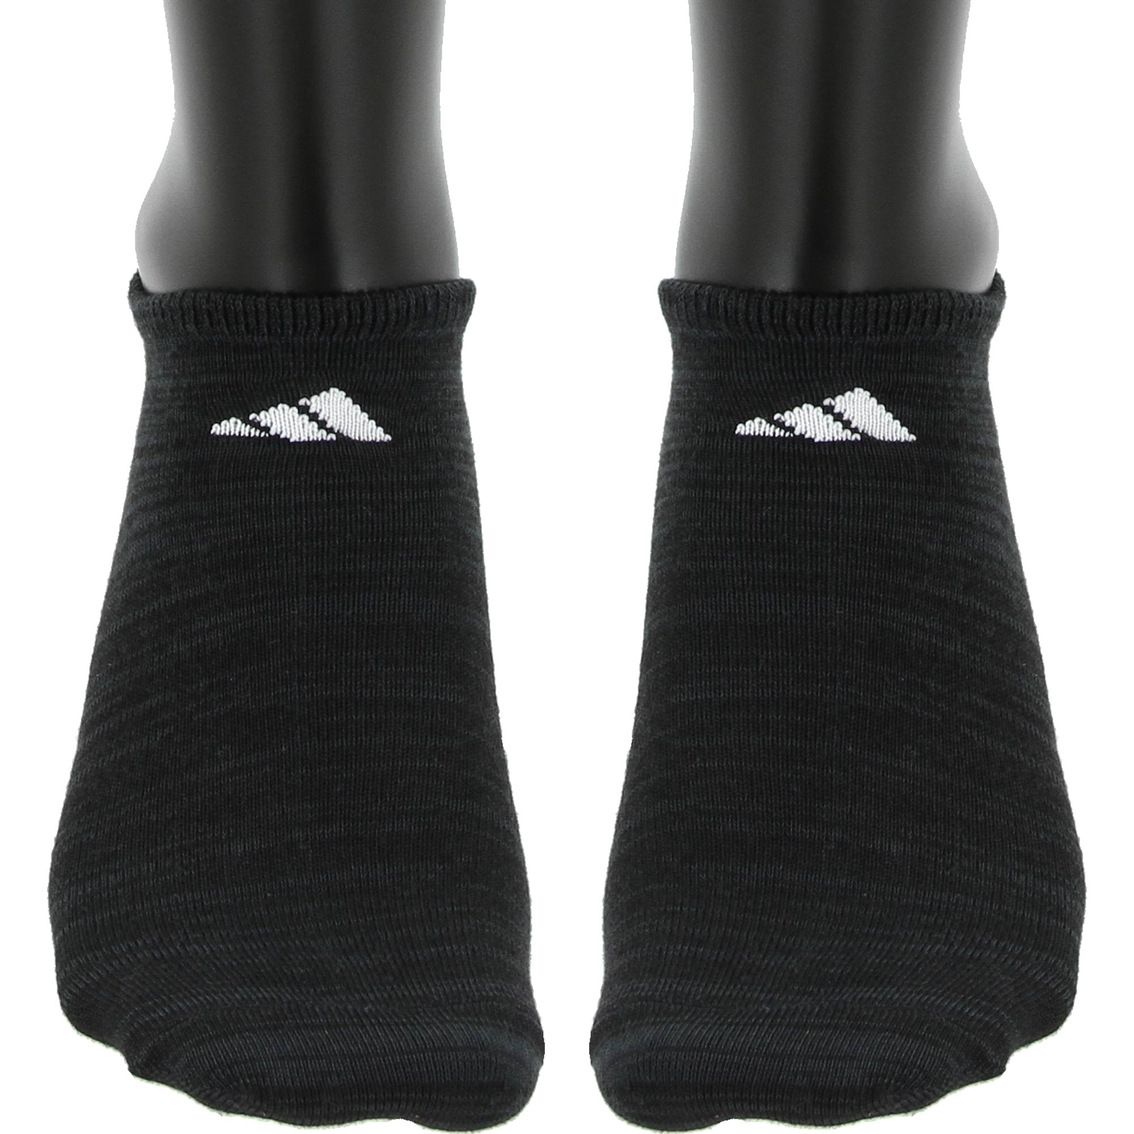 adidas Superlite No Show Socks 6 pk. - Image 3 of 4